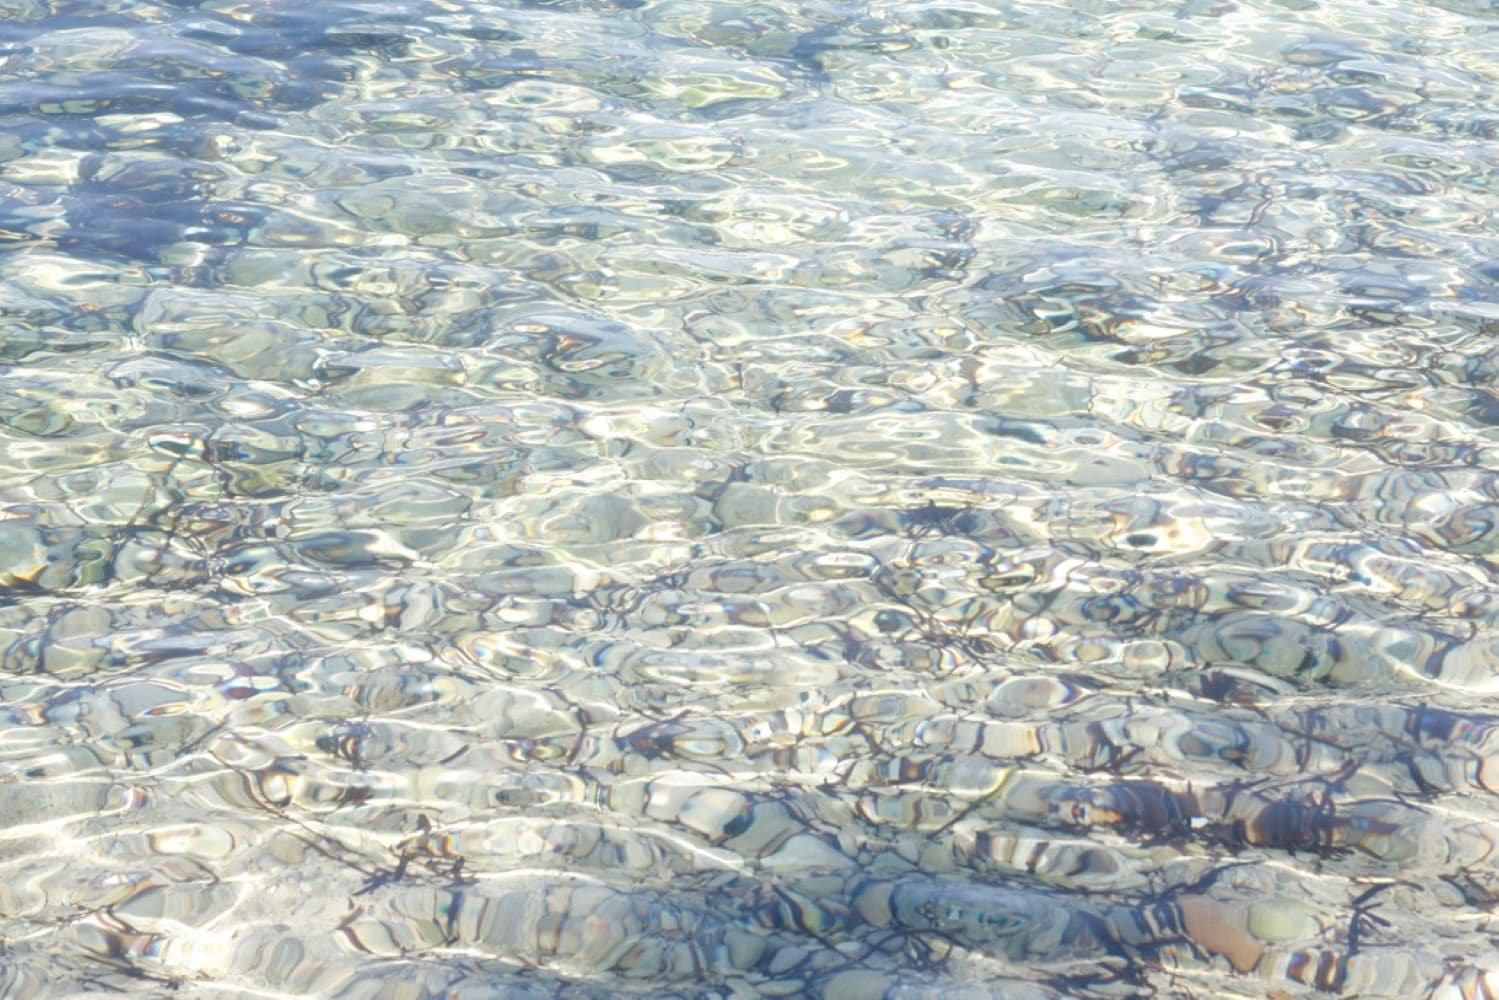 Cristal water in Colònia de Sant Pere beaches